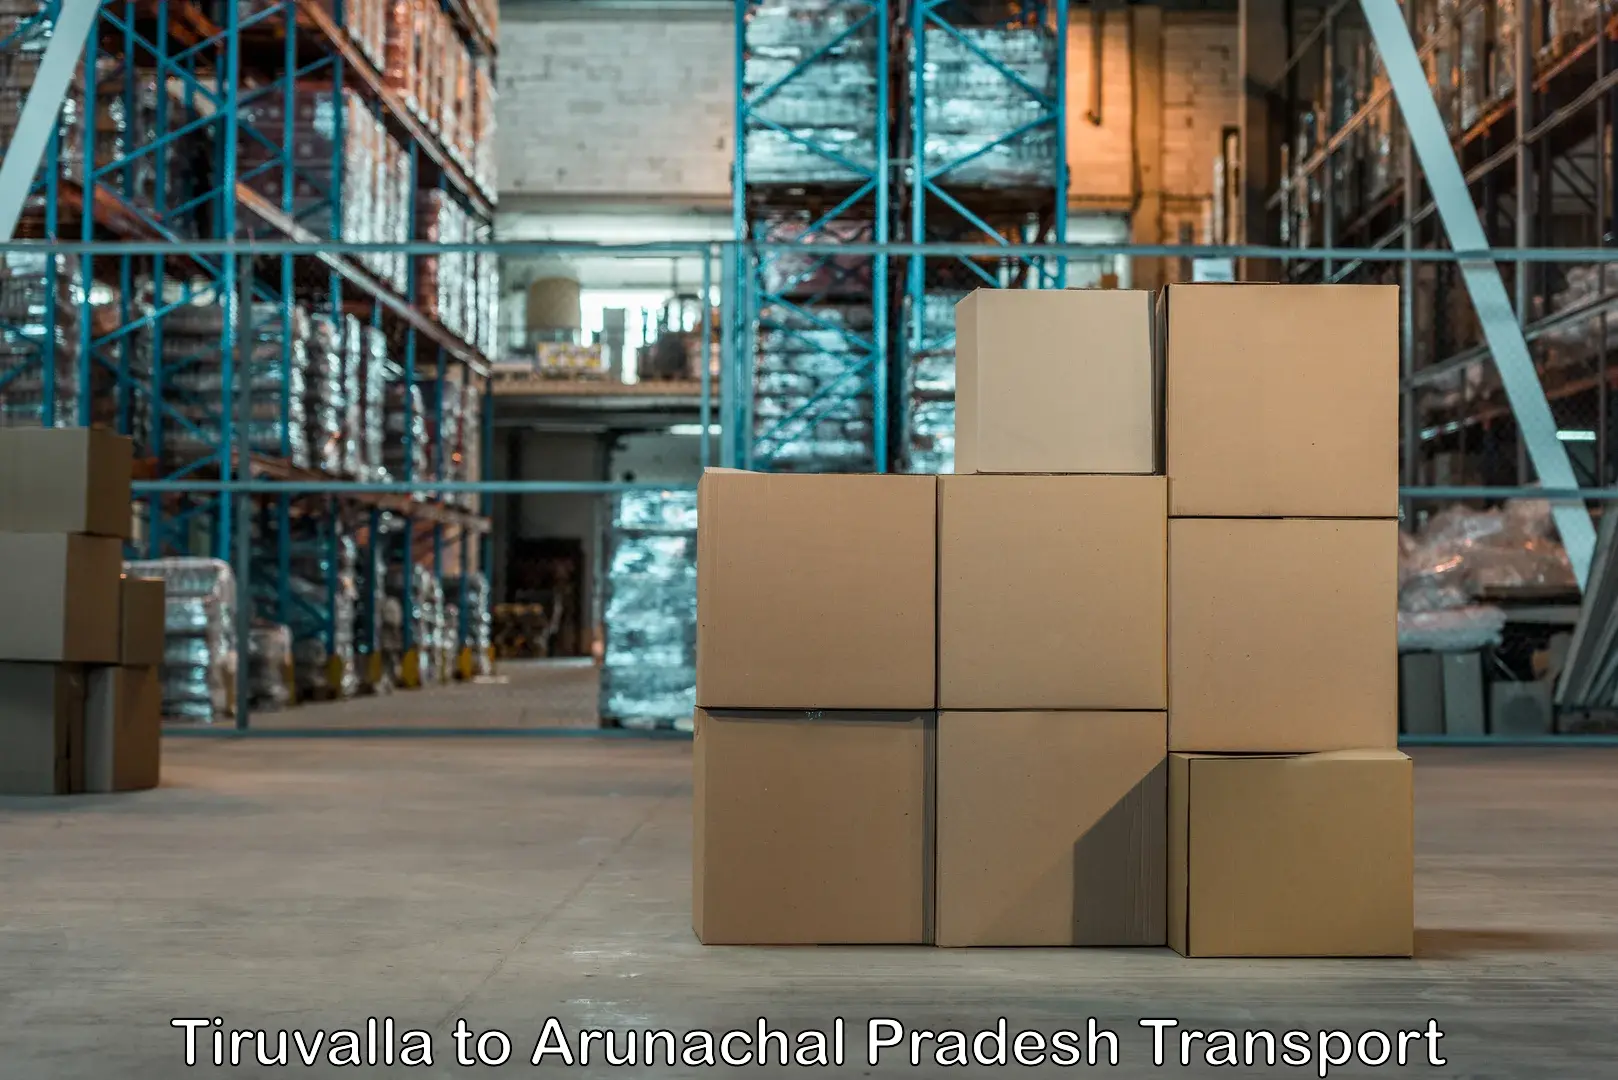 Nearest transport service Tiruvalla to Arunachal Pradesh